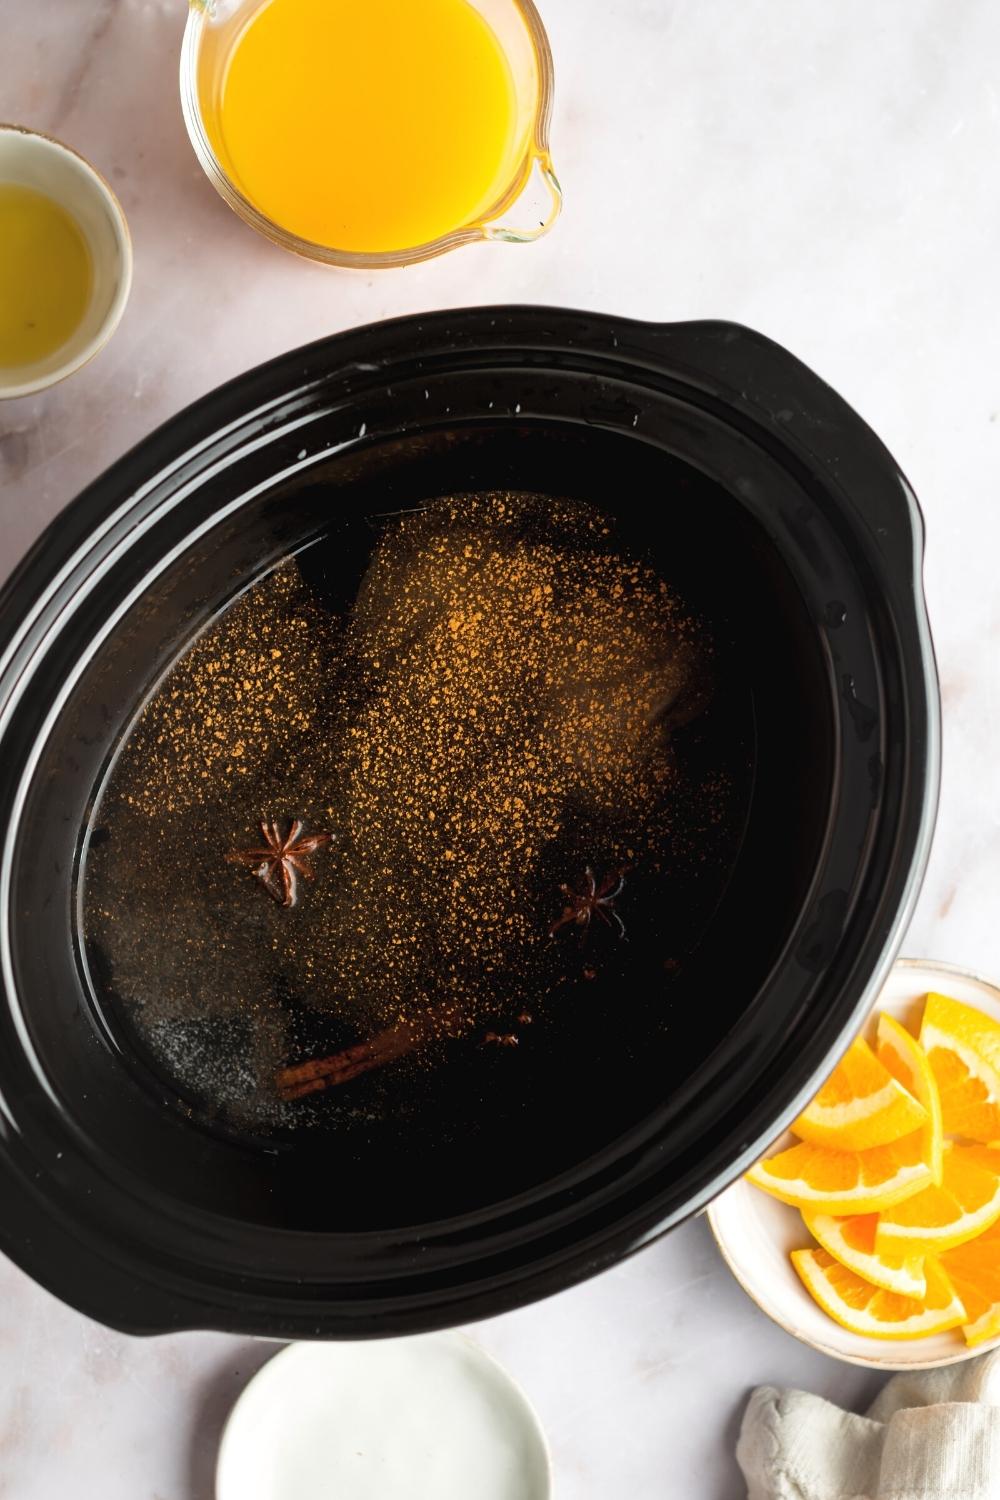 Russian tea mix in a crock pot.